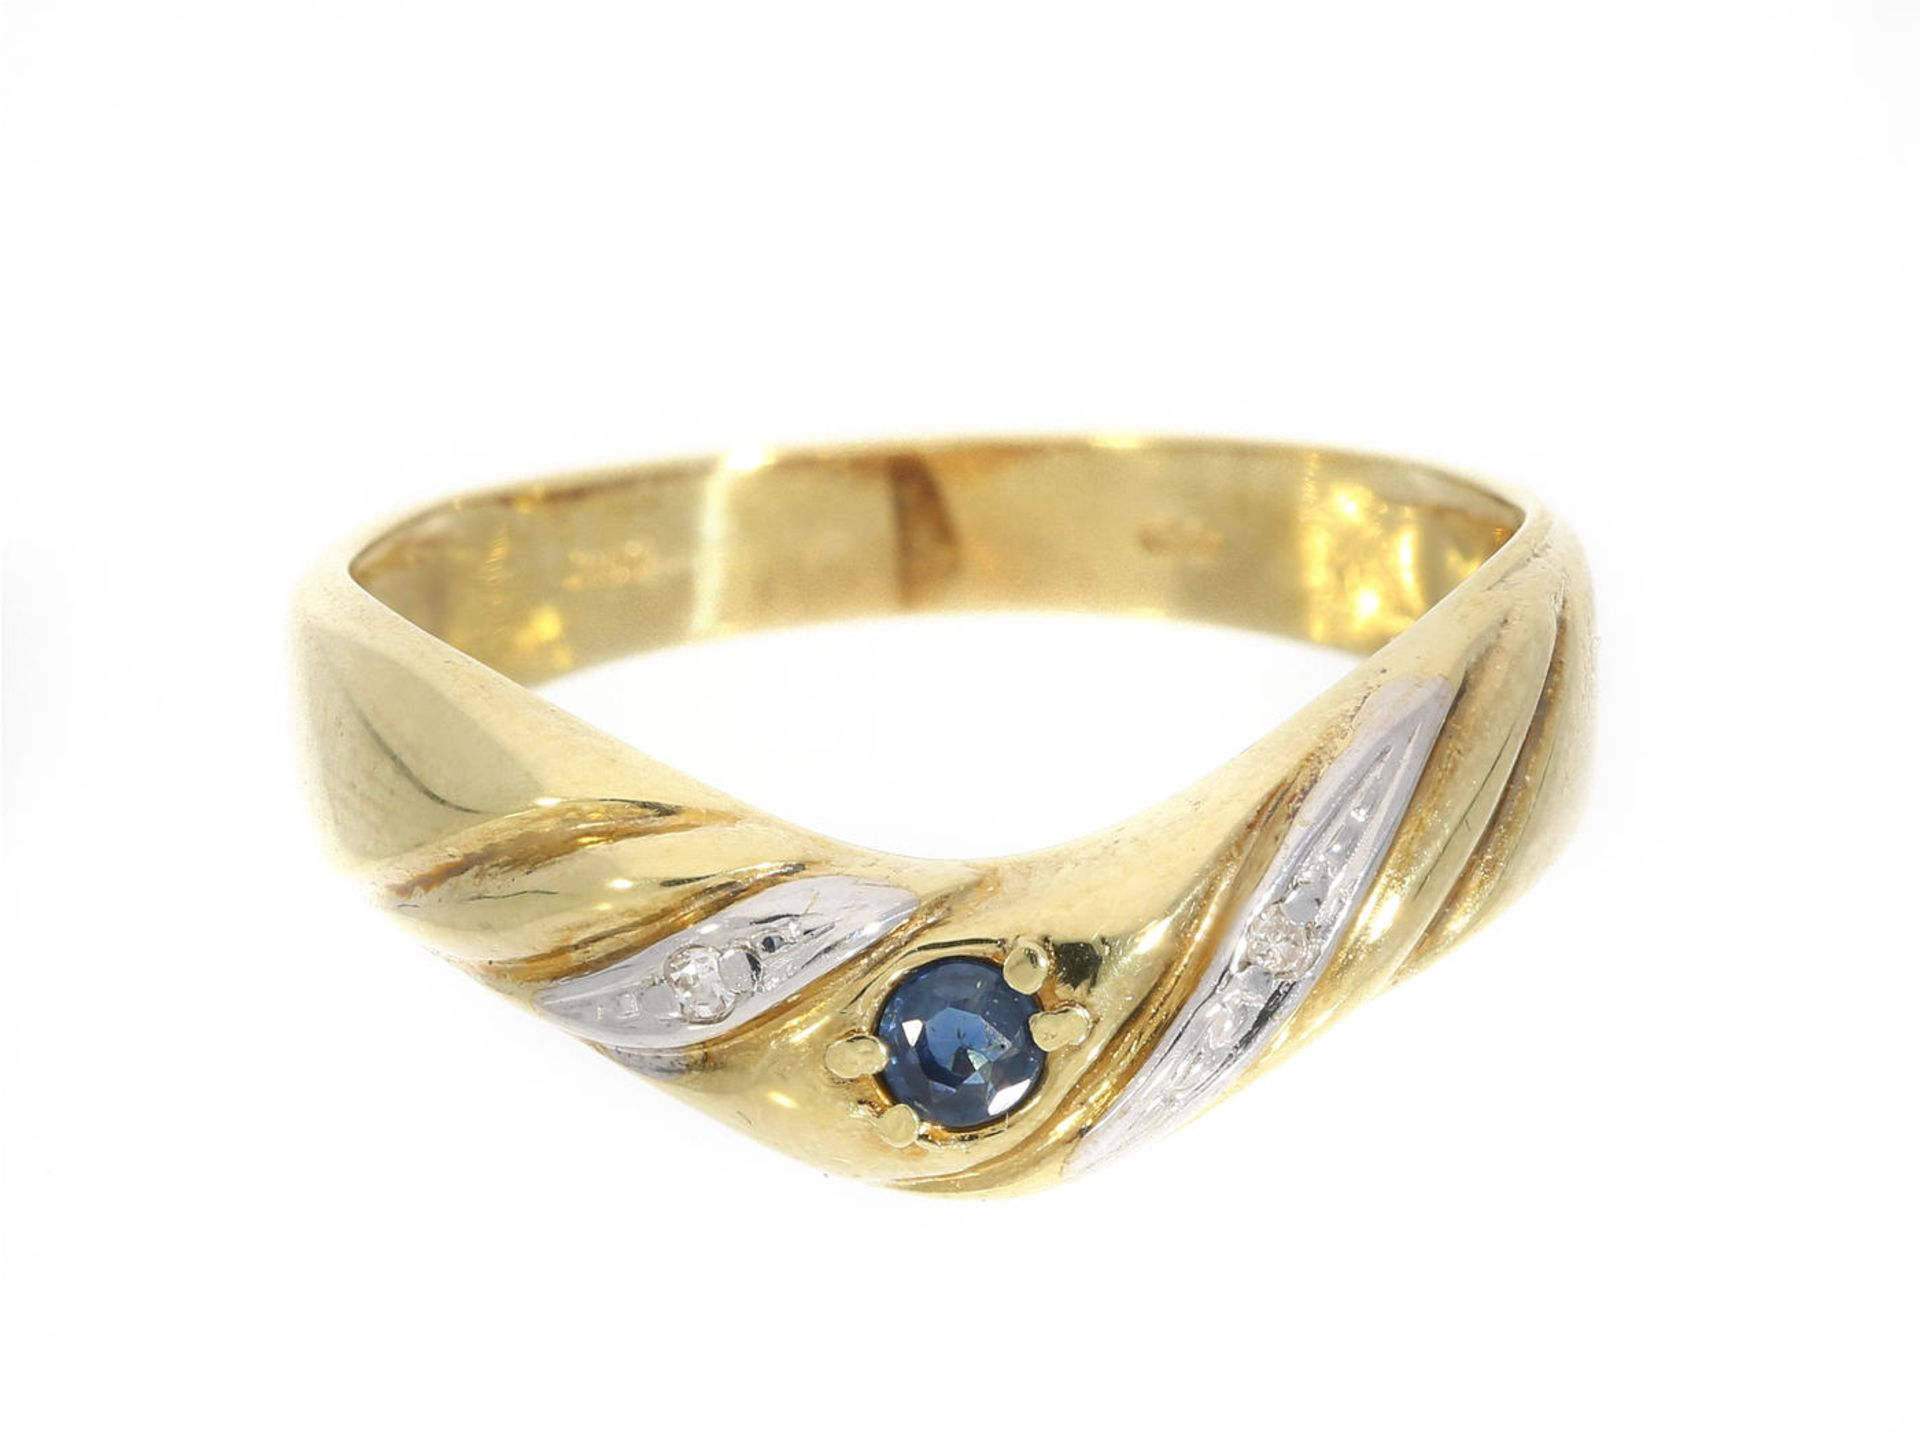 Ring: Saphir/Diamant-Goldring Ca. Ø15mm, RG48, Teenager-Größe, ca. 1,5g, 14K Gold, mittig ein blauer